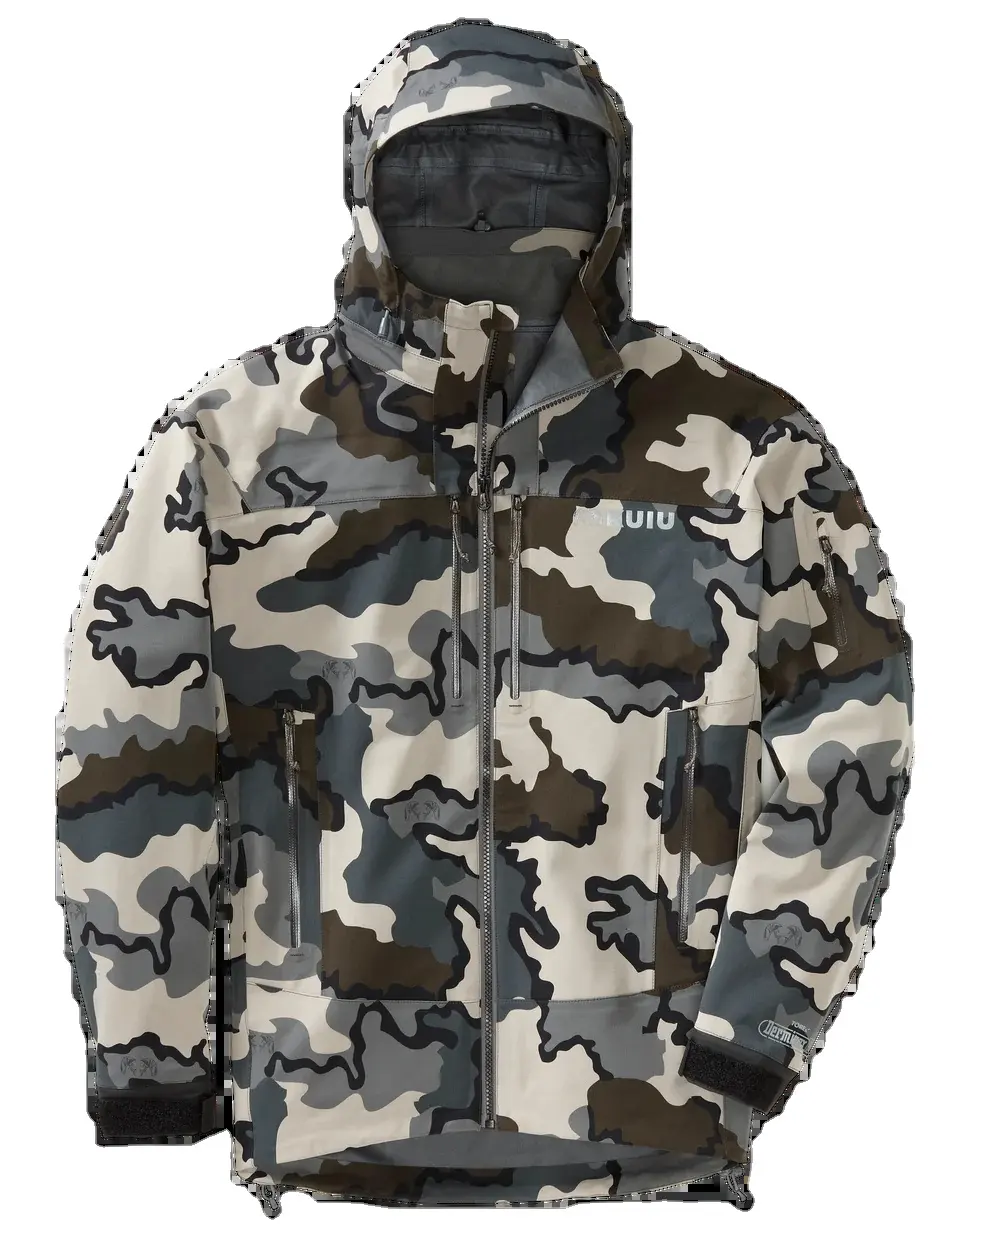 VK Walker-chaquetas de caza y pesca transpirables, tela exterior silenciosa, para hombres y mujeres